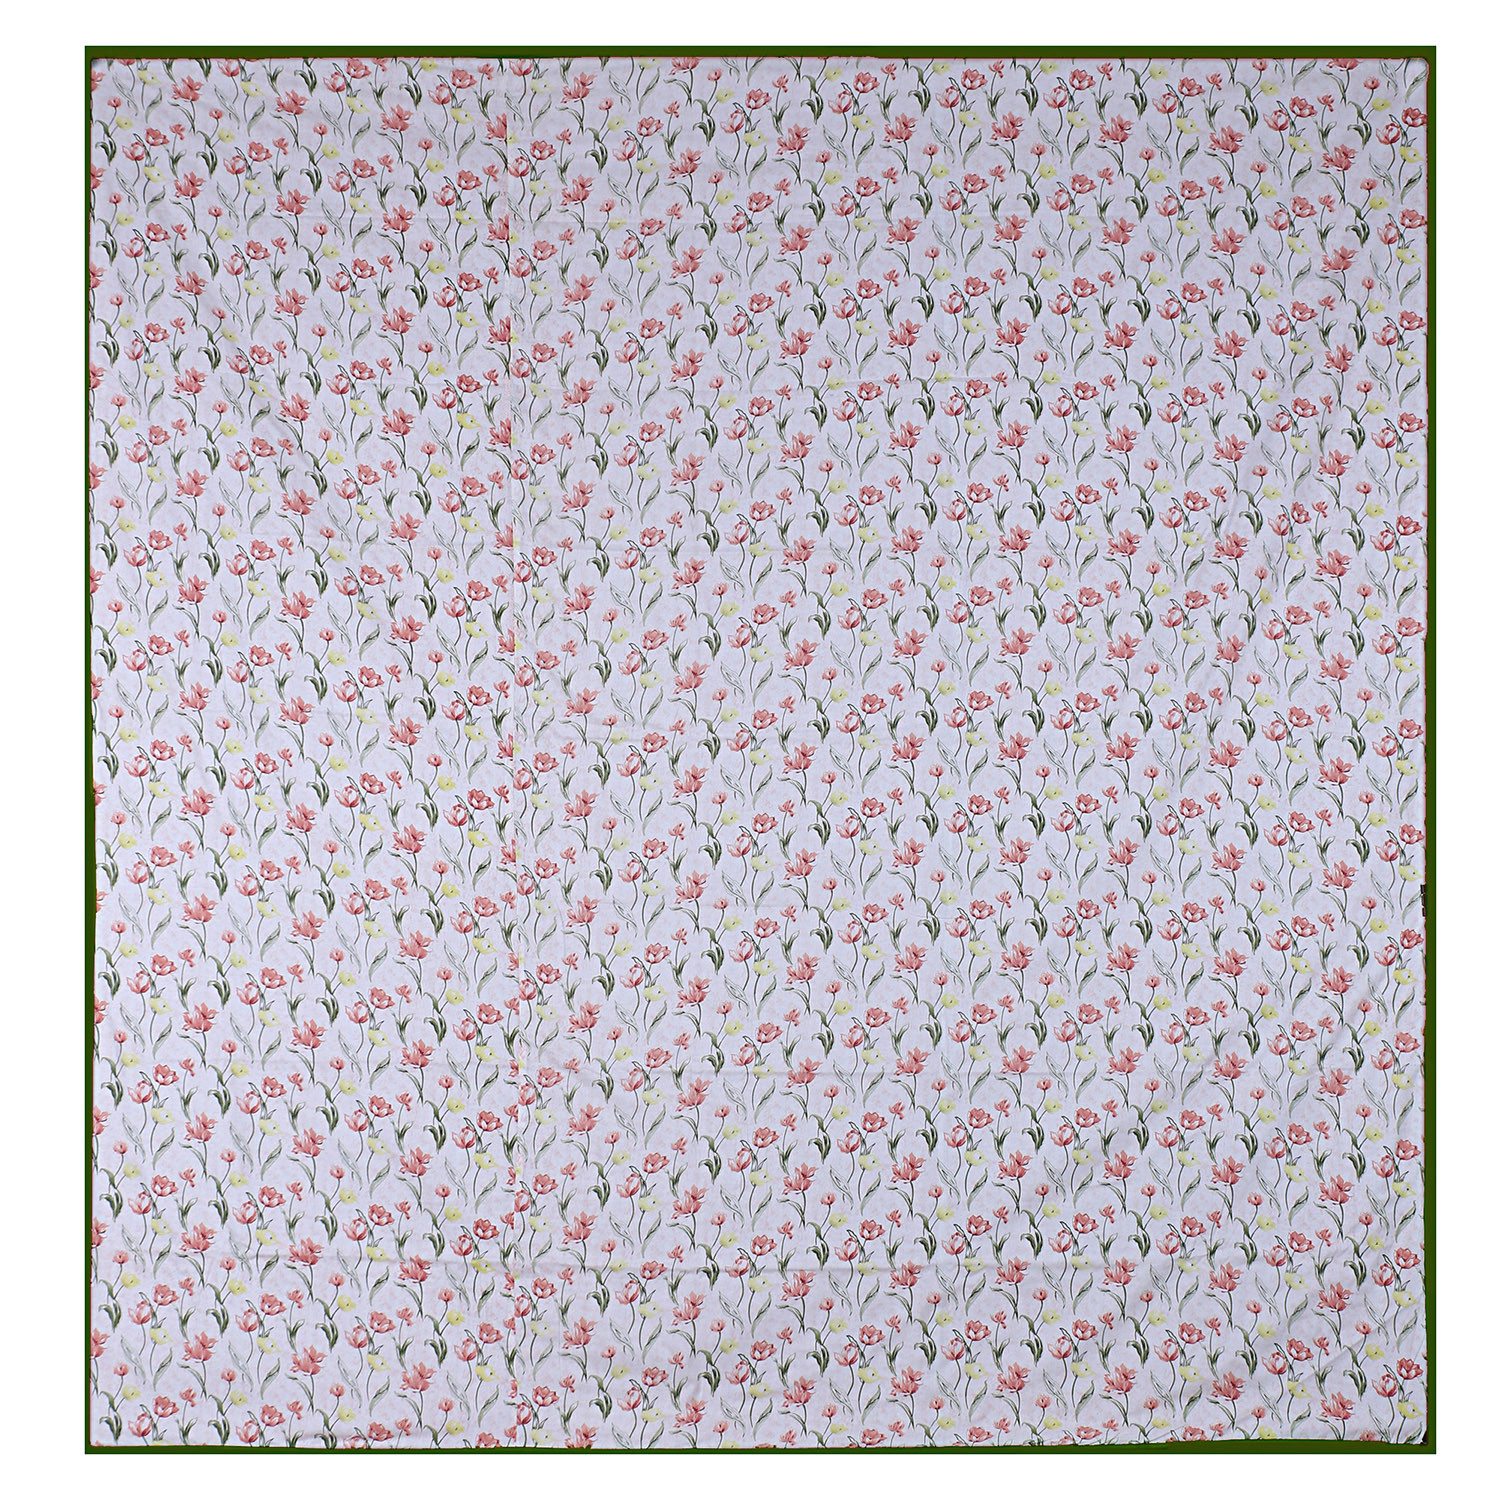 Kuber Industries Cotton Soft Lightweight Floral Design Reversible Single Bed Dohar|Blanket|AC Quilt for Home & Travel (Light Pink)